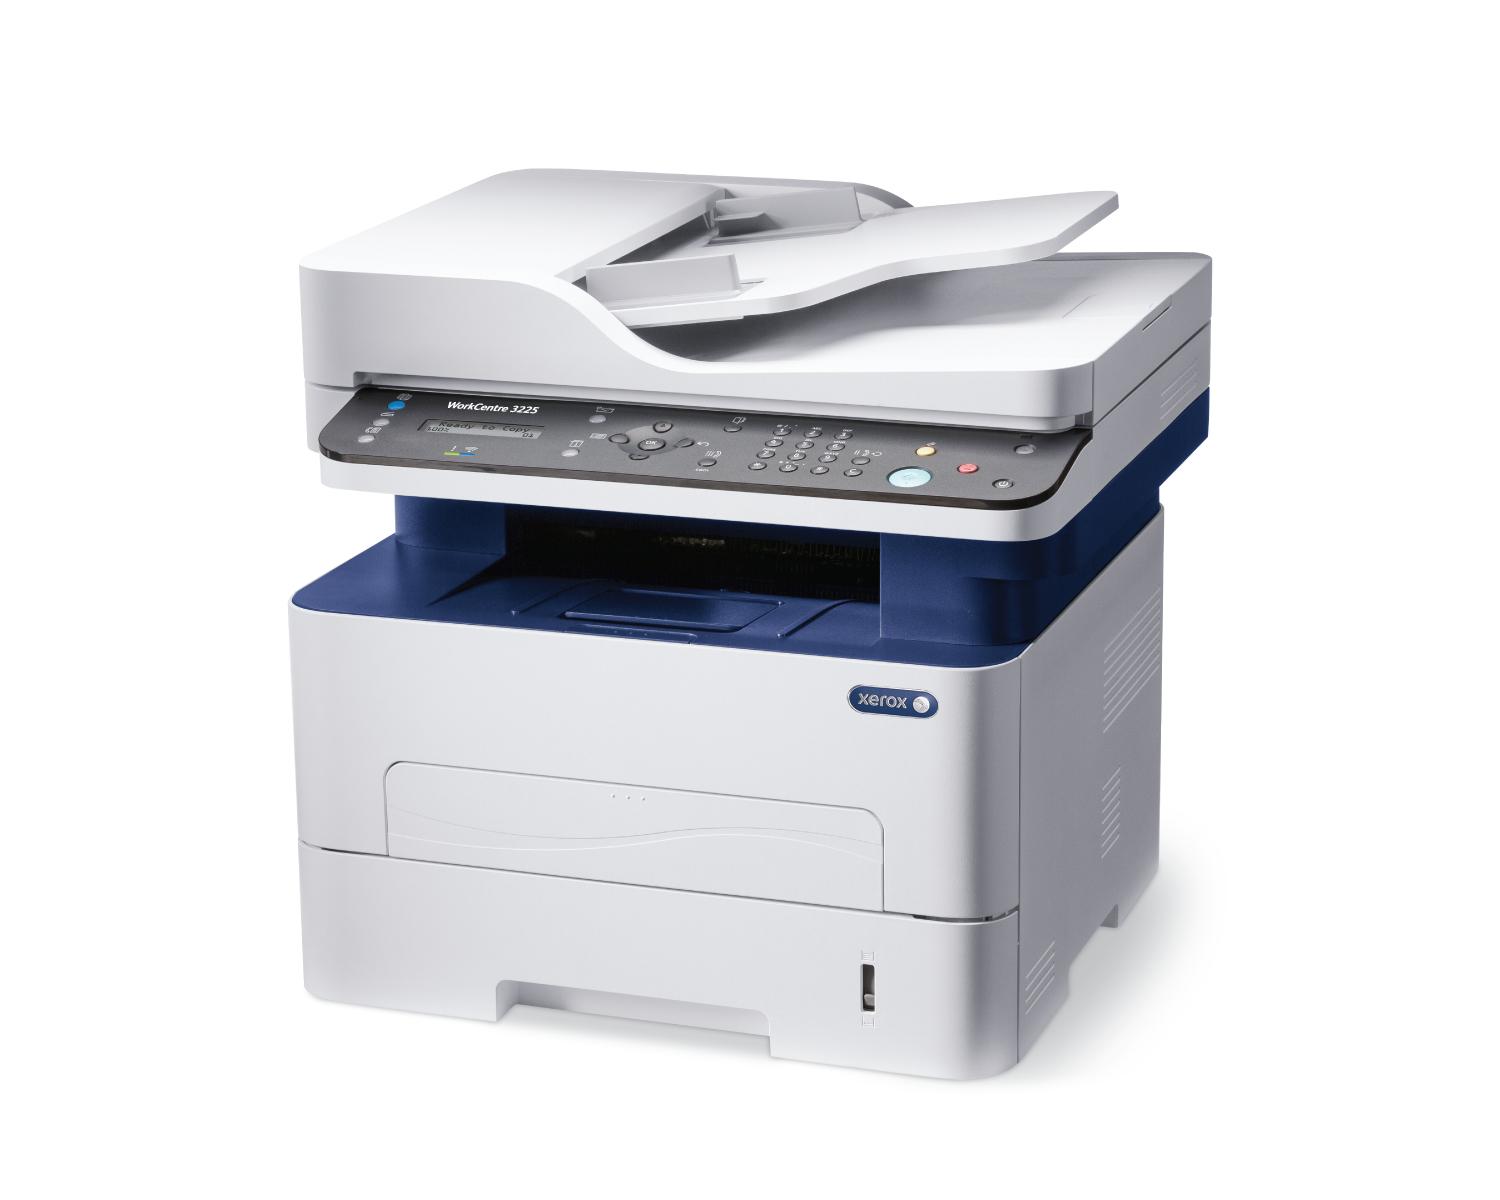 Xerox workcentre 3225 toner dolumu yazıcı kartuş fiyatı